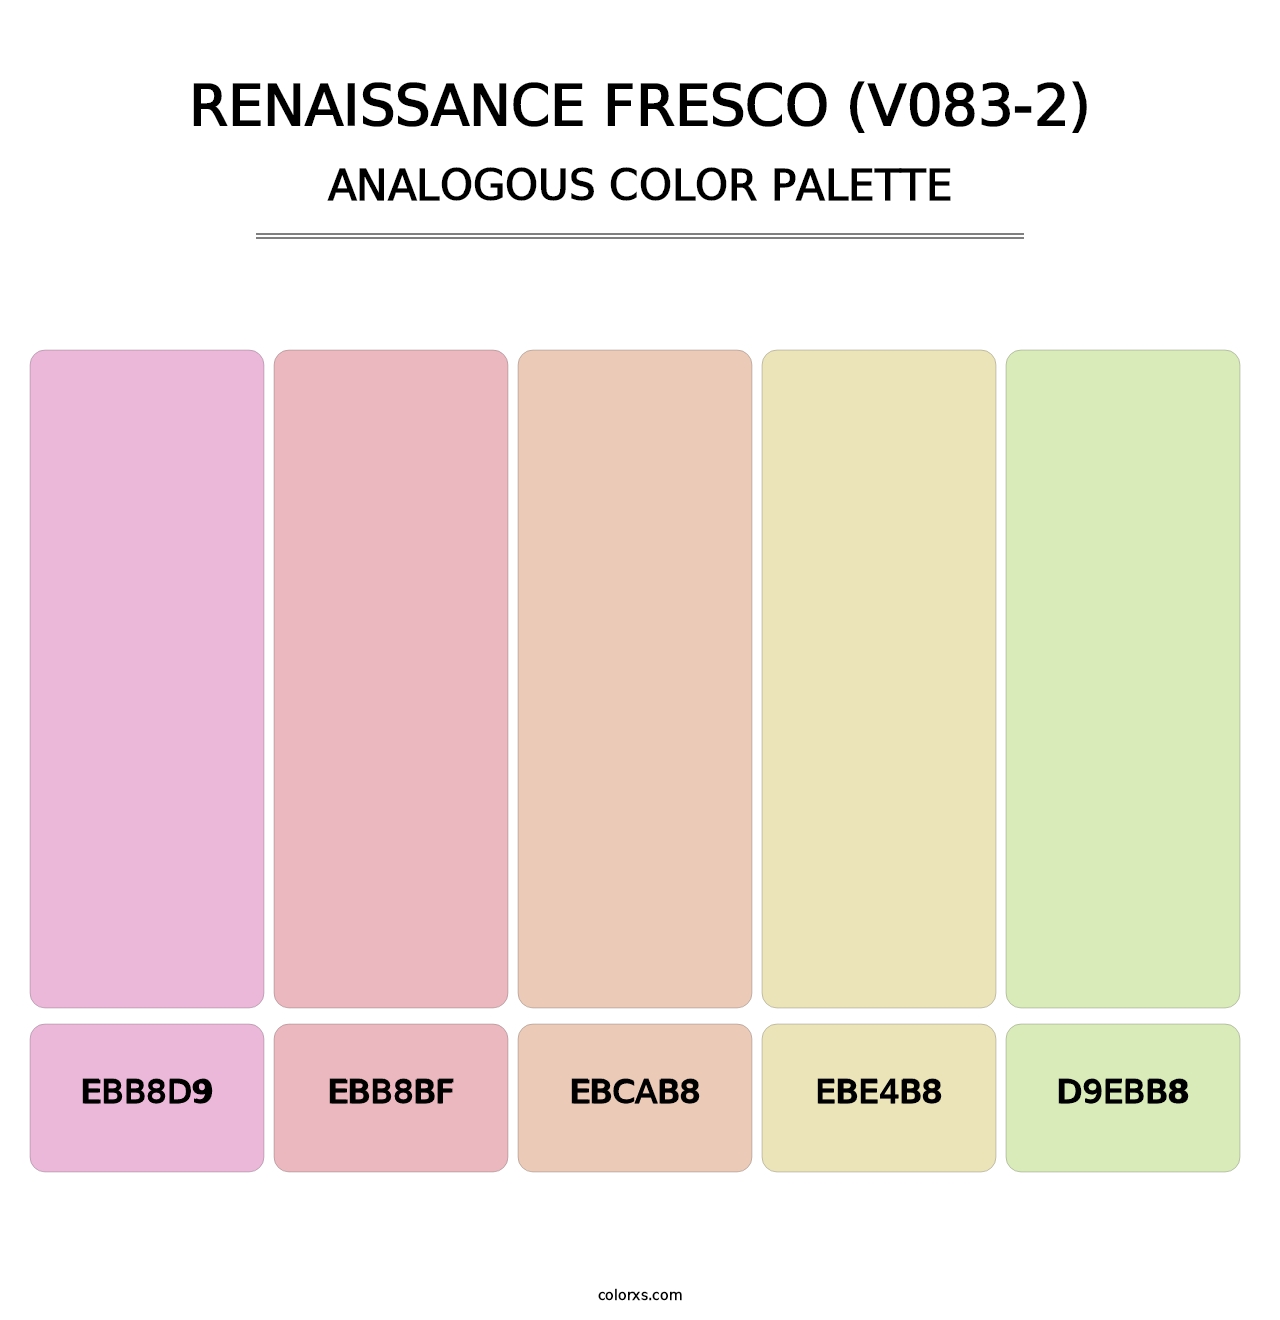 Renaissance Fresco (V083-2) - Analogous Color Palette